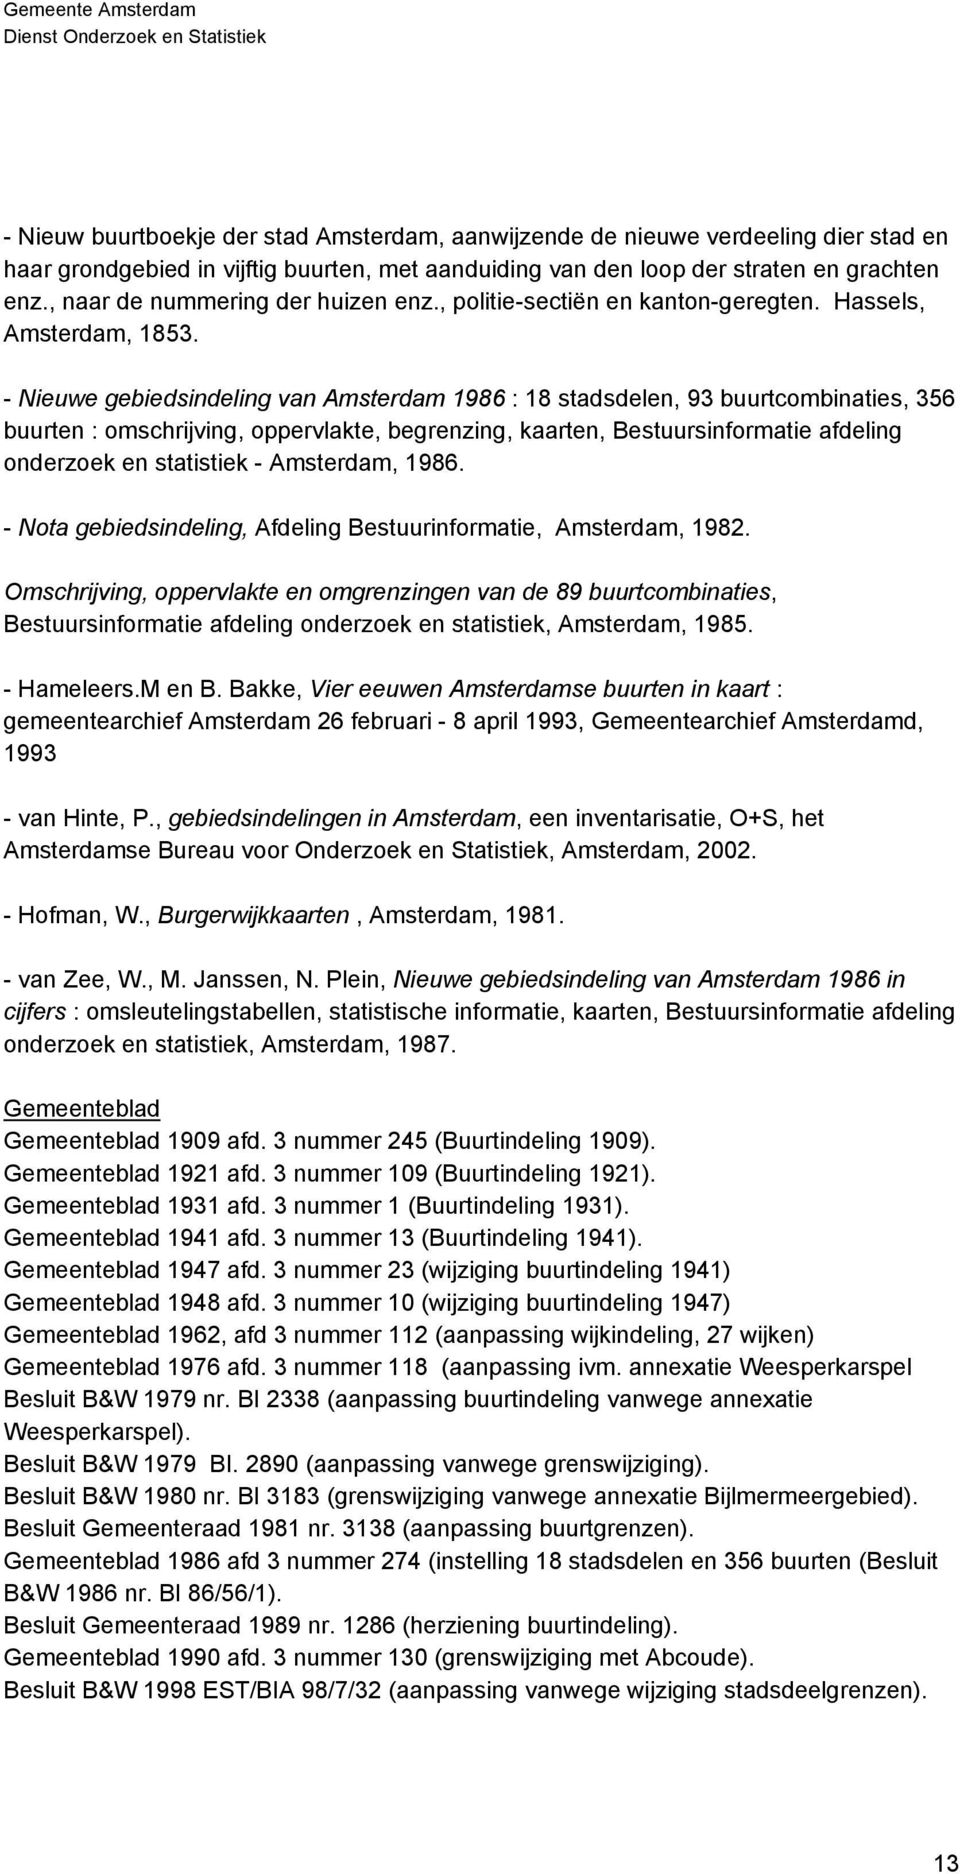 - Nieuwe gebiedsindeling van Amsterdam 1986 : 18 stadsdelen, 93 buurtcombinaties, 356 buurten : omschrijving, oppervlakte, begrenzing, kaarten, Bestuursinformatie afdeling onderzoek en statistiek -